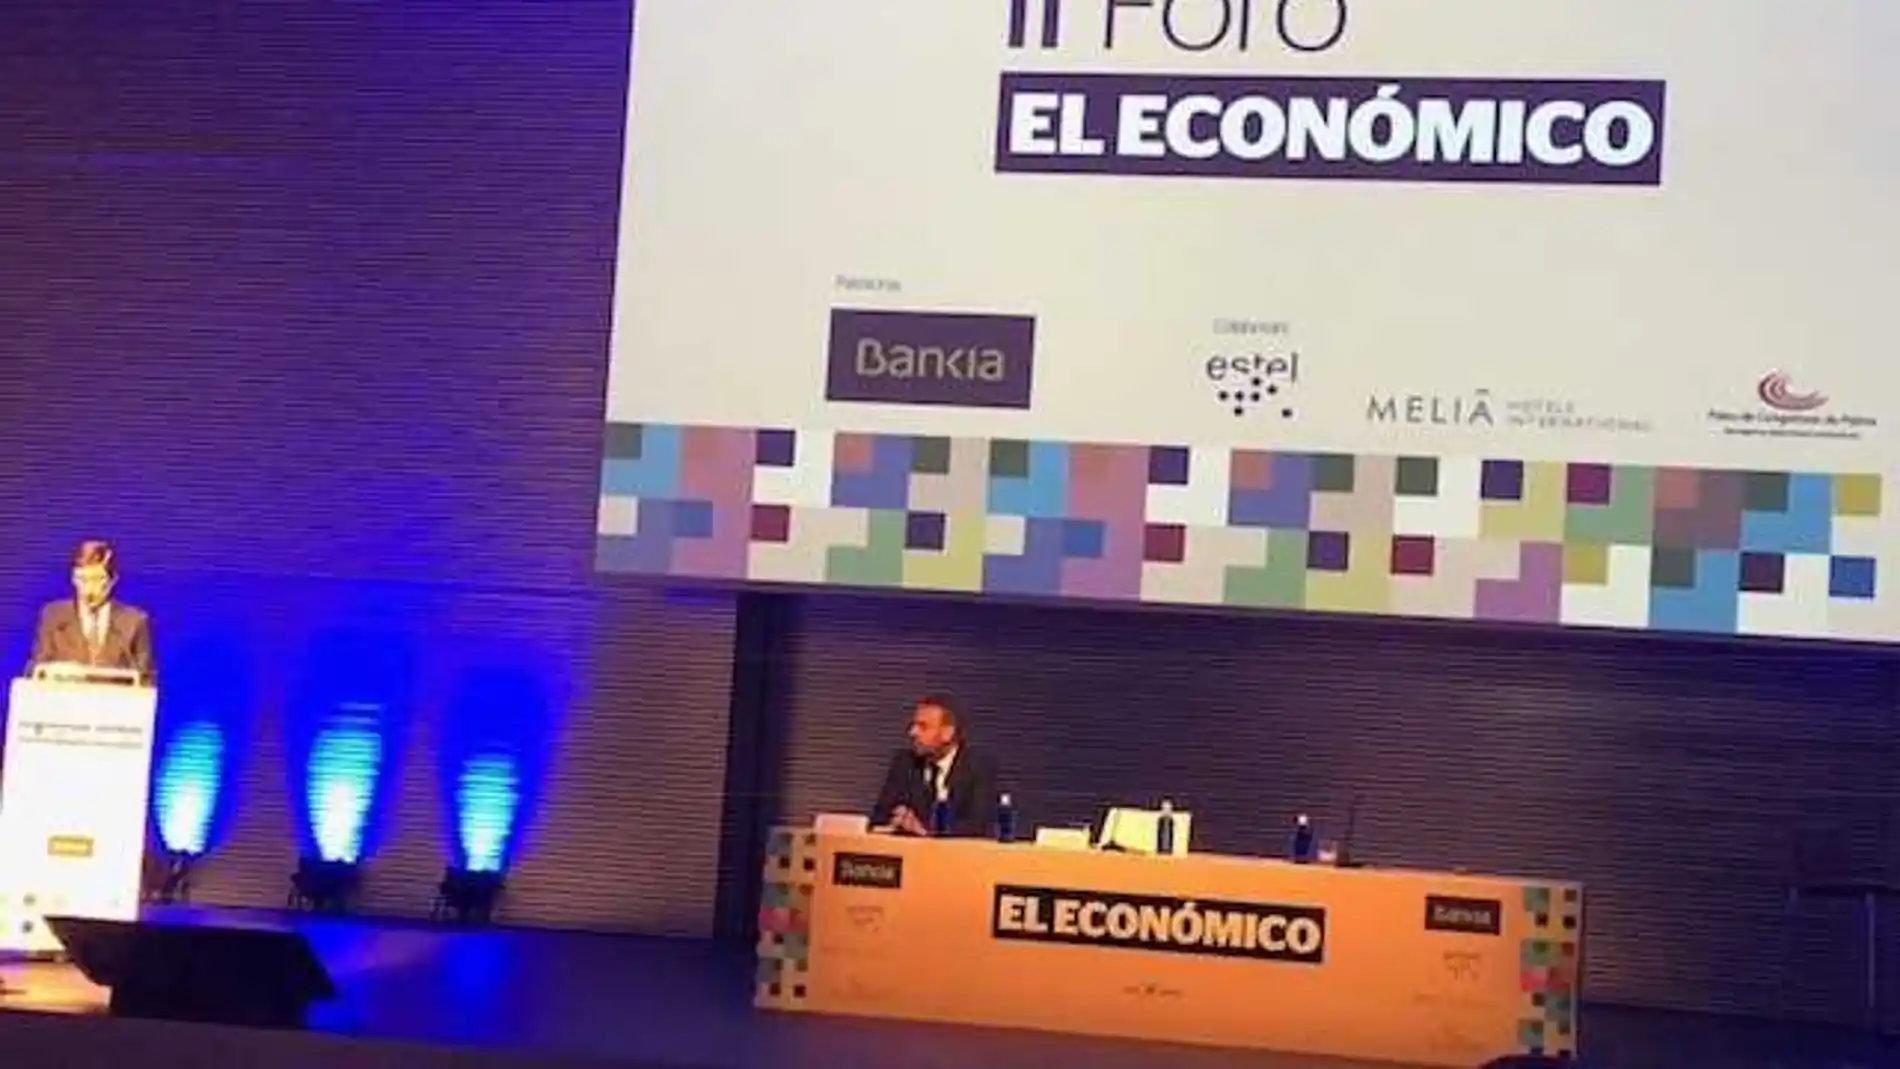 José Ignacio Goirigolzarri interviene en el II Foto de economía organizado por El Económico